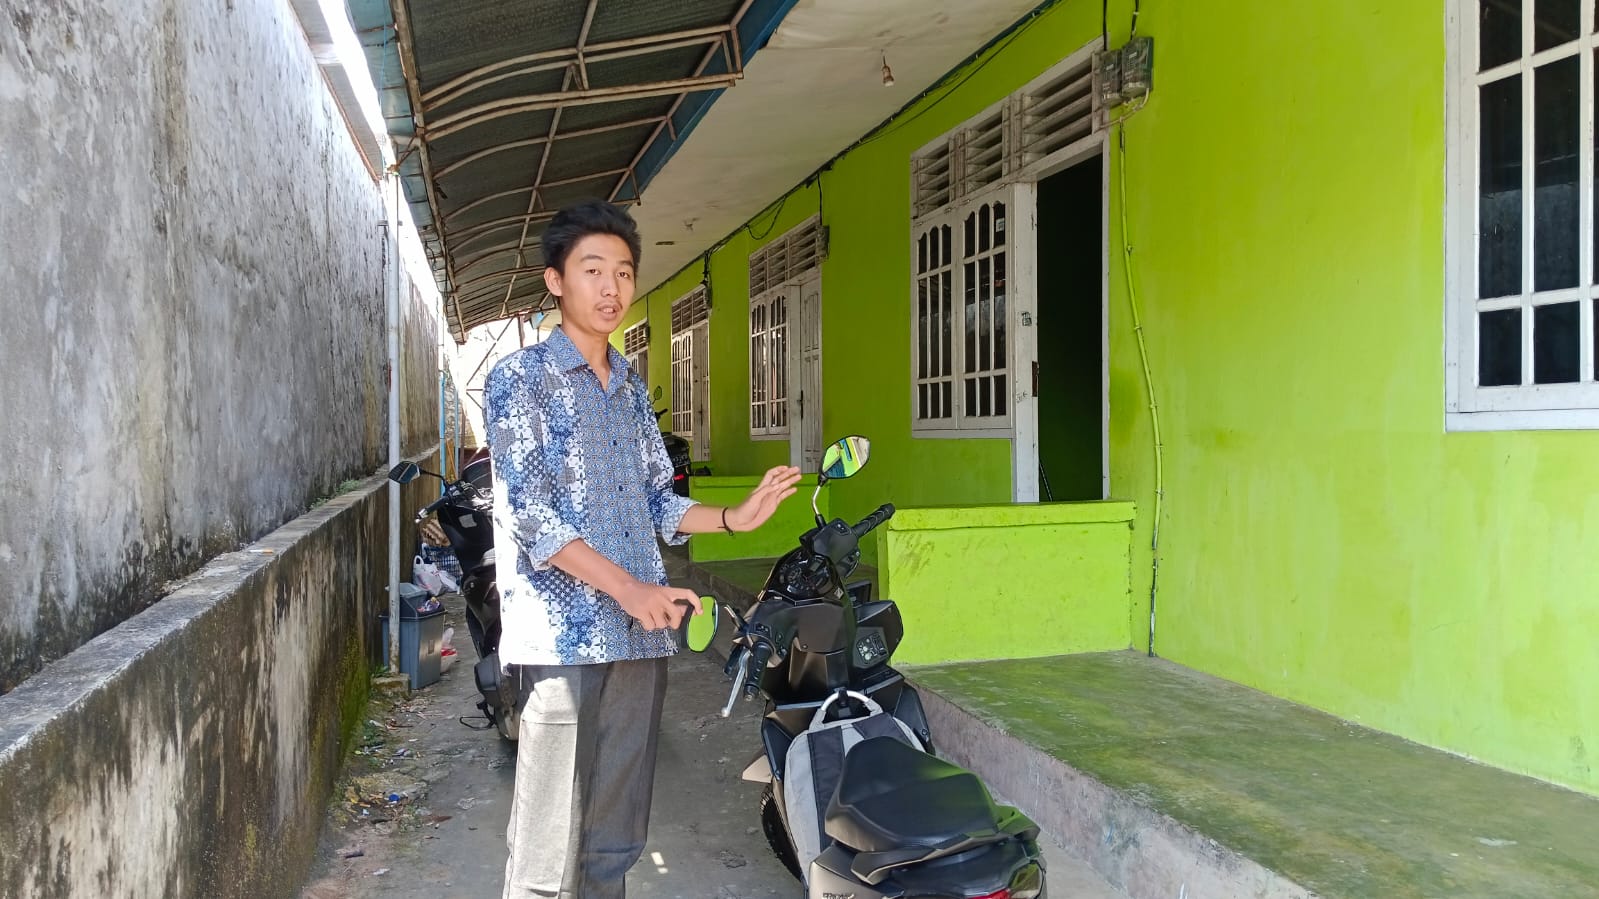 Pencurian Sepeda Motor Terjadi Lagi di Kota Bengkulu, Pelaku Sasar Kos-kosan